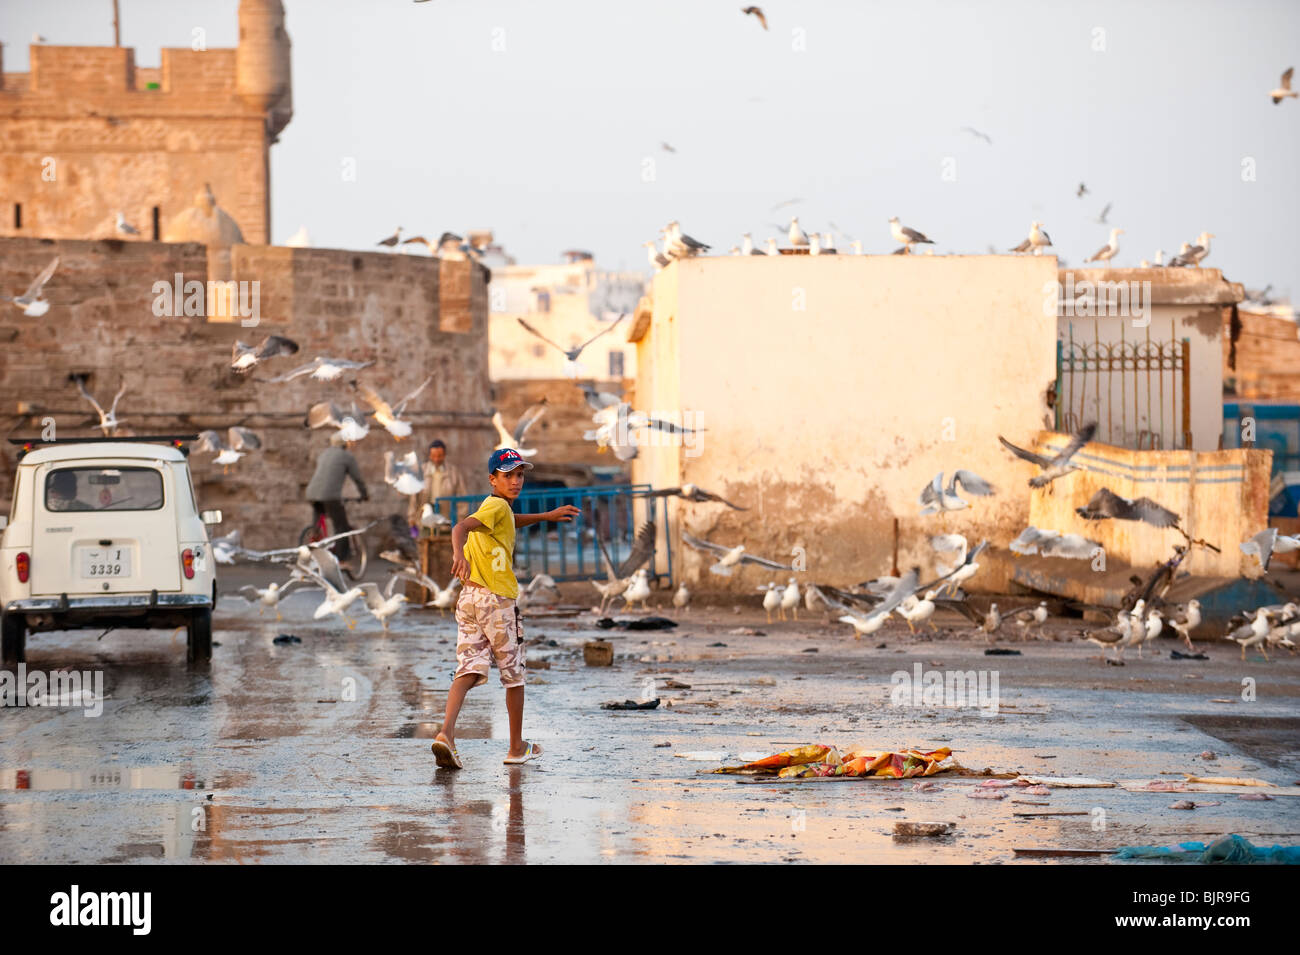 Dies ist ein Bild eines marokkanischen jungen ein Spaziergang durch den Hafen oder Essaouira nach die Fischmärkten geschlossen haben. Stockfoto